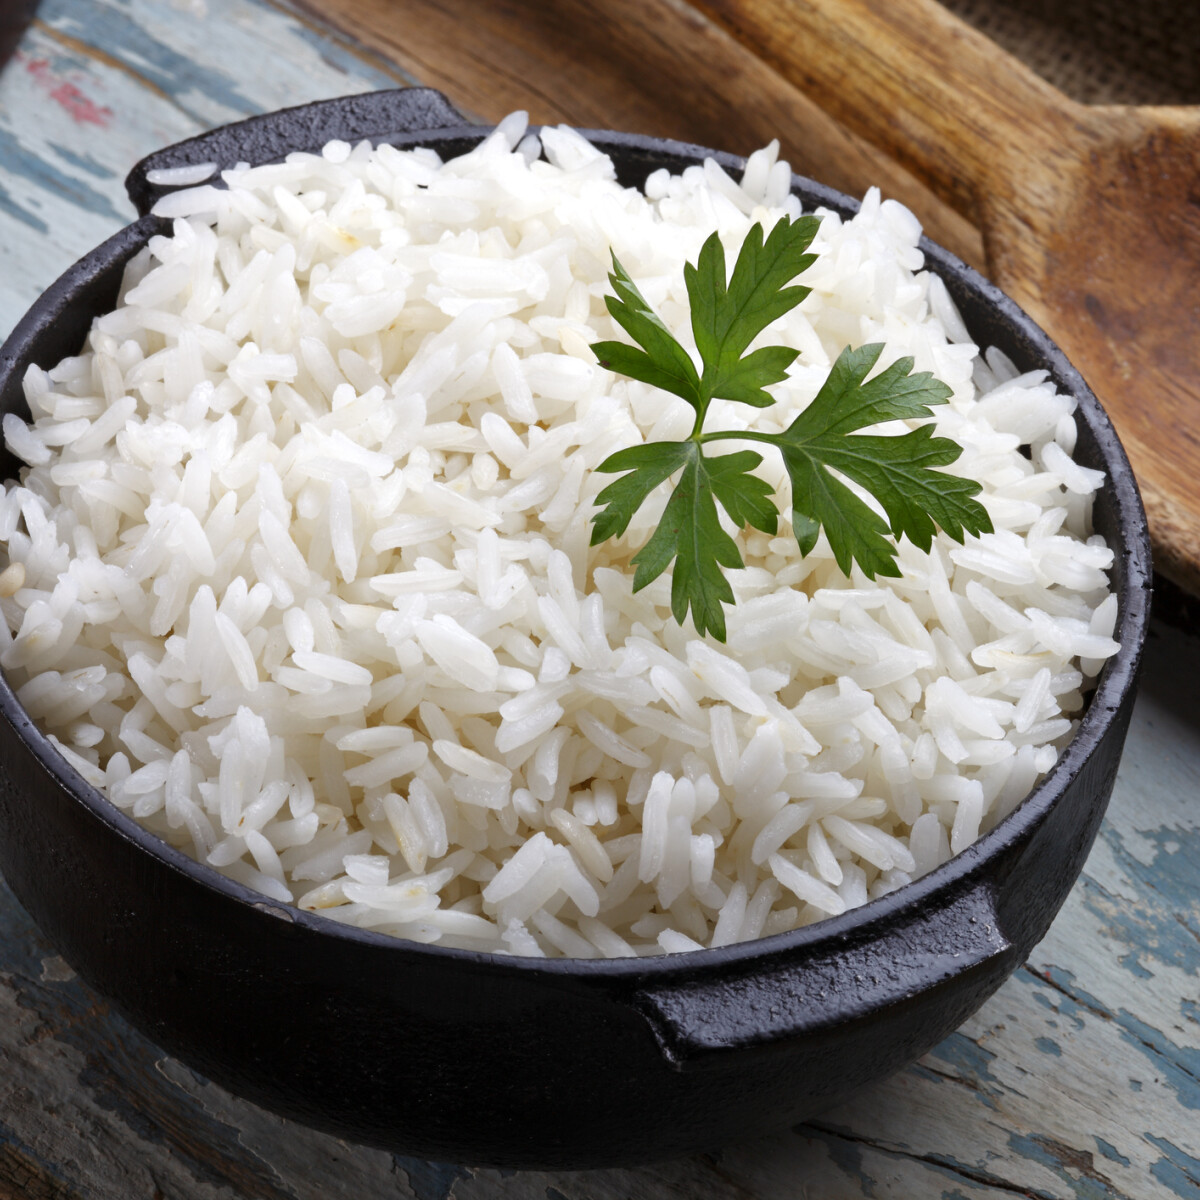 HEURÉKA! Megvan a trükk, amitől finom lesz a másnapos rizs